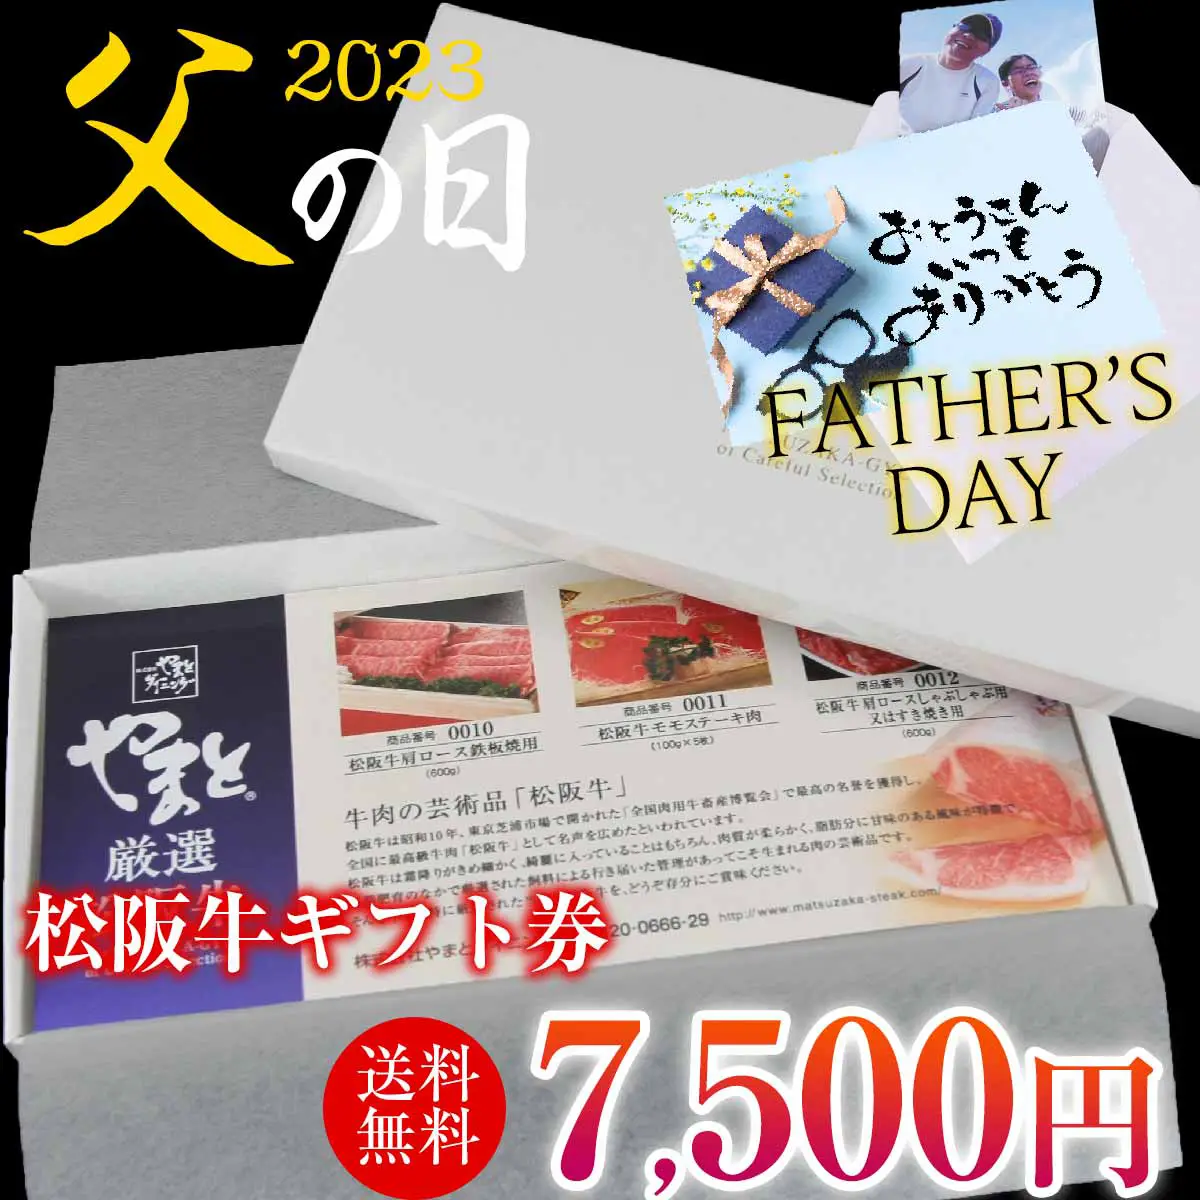 【父の日】松阪牛お肉のギフト券Bタイプ